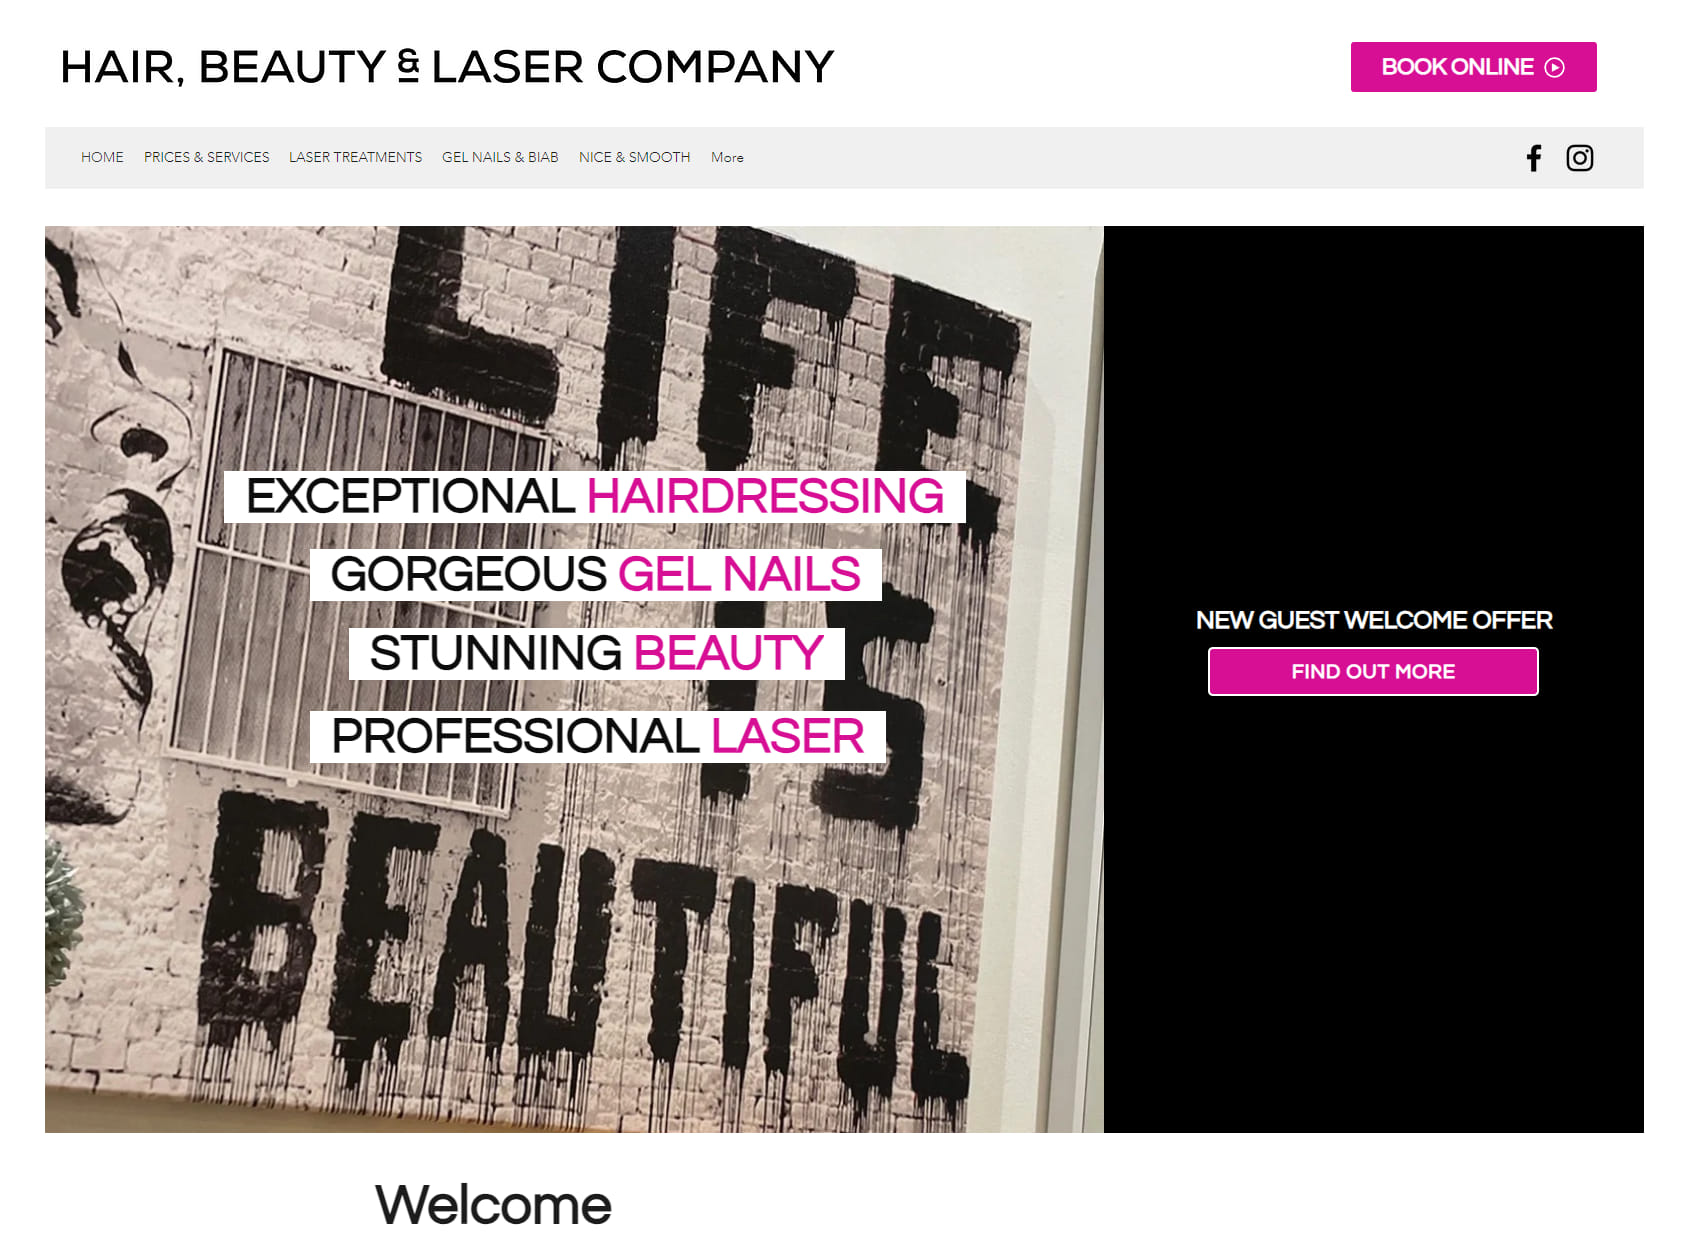 Hair Beauty & Laser Company